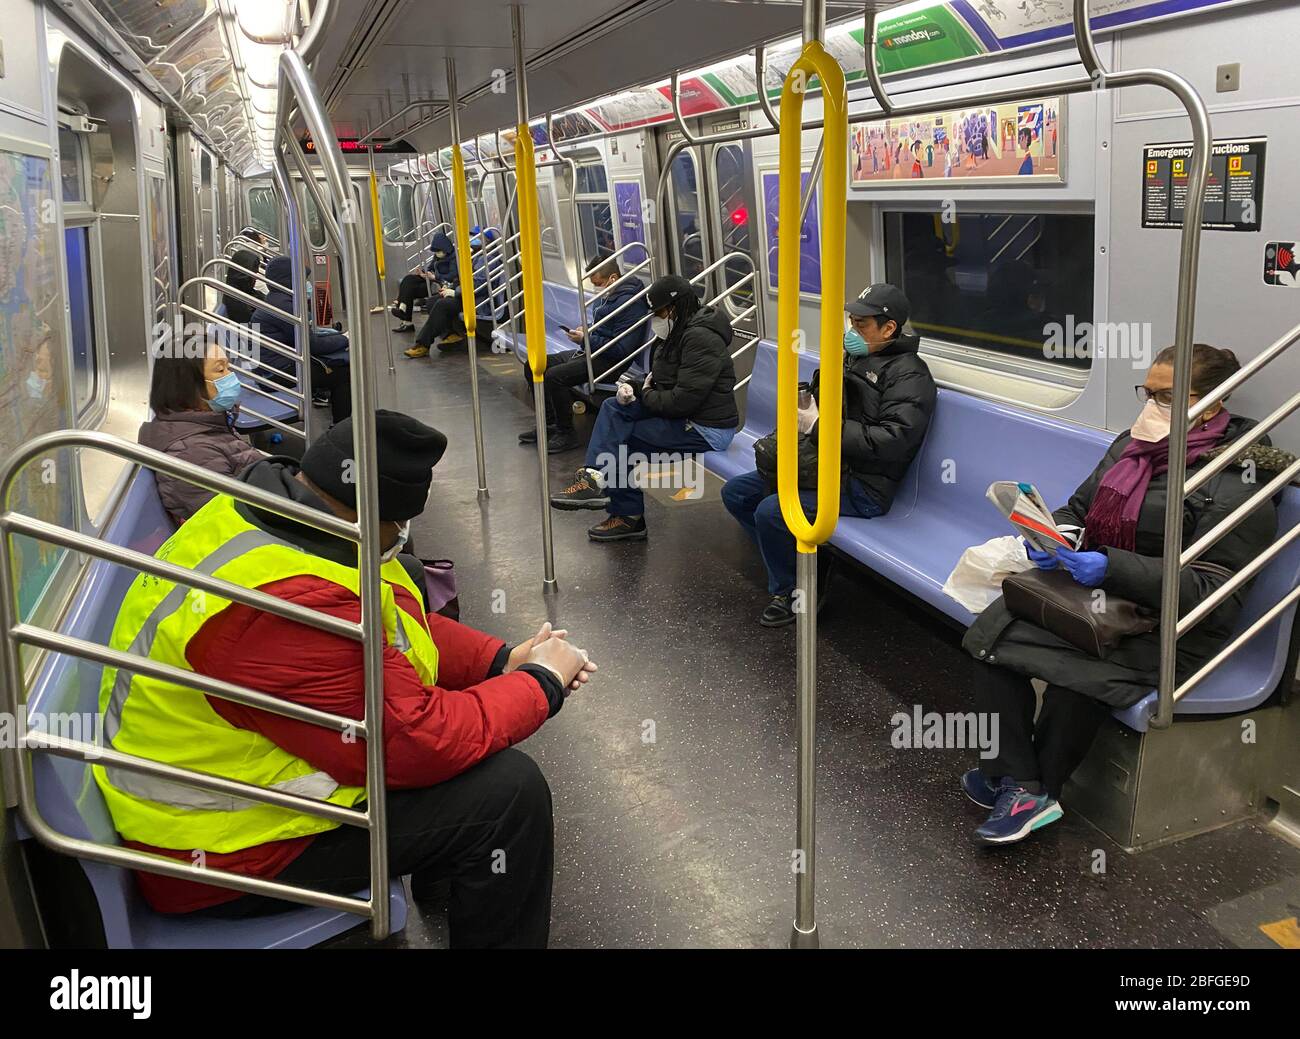 Da New York City mit dem Coronavirus fertig wird, ist es nicht schwierig, soziale Distanzierung auf U-Bahnen zu üben, da relativ wenige Menschen die Züge fahren. Morgenrausch, wichtige Arbeiter auf dem Weg von Brooklyn nach Manhattan. Brooklyn, NY Stockfoto